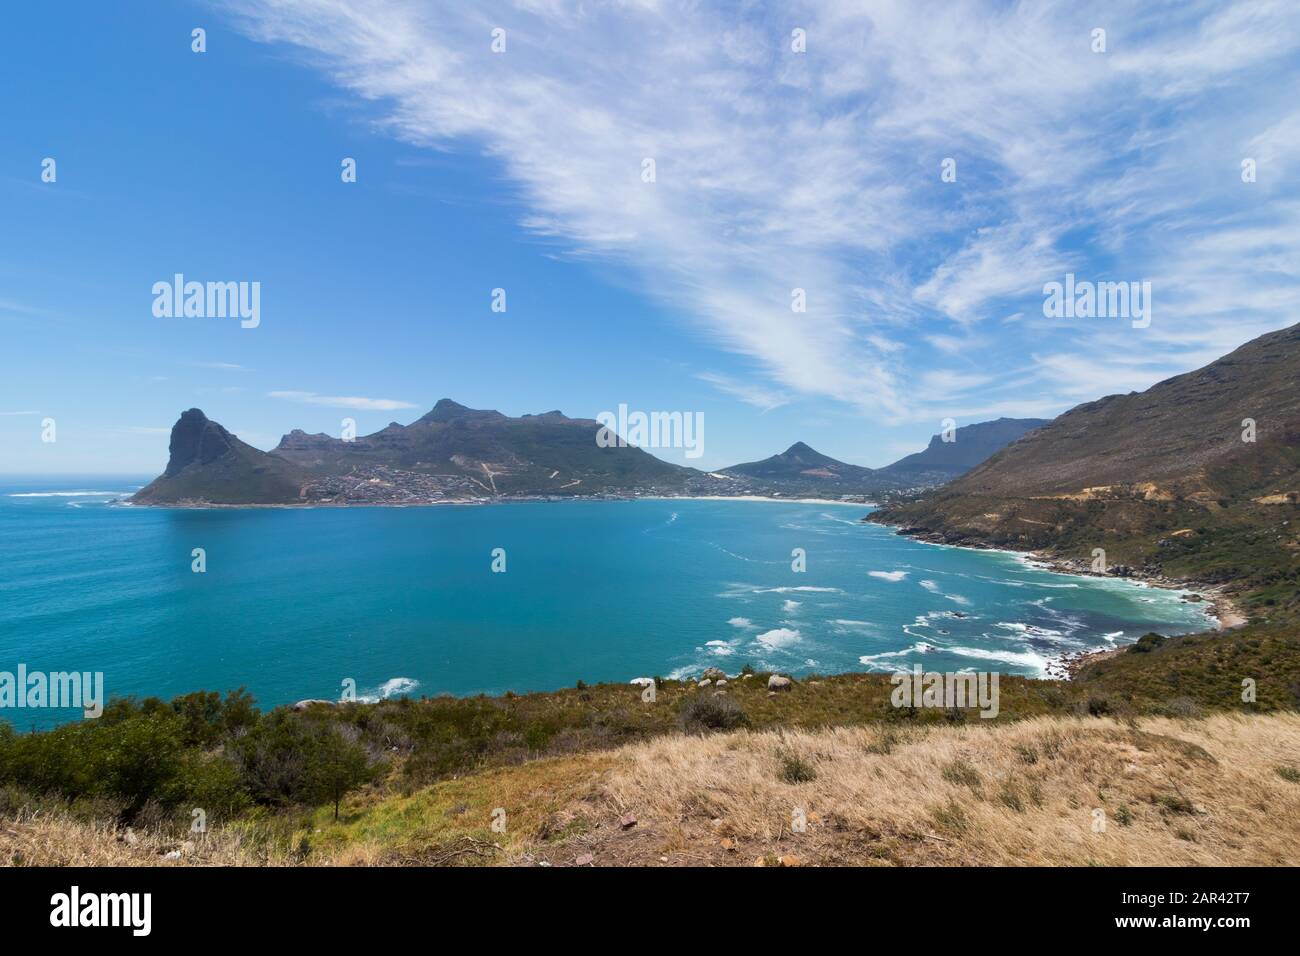 Atemberaubende Aussicht auf den Chapman's Peak am Meer eingefangen In Südafrika Stockfoto